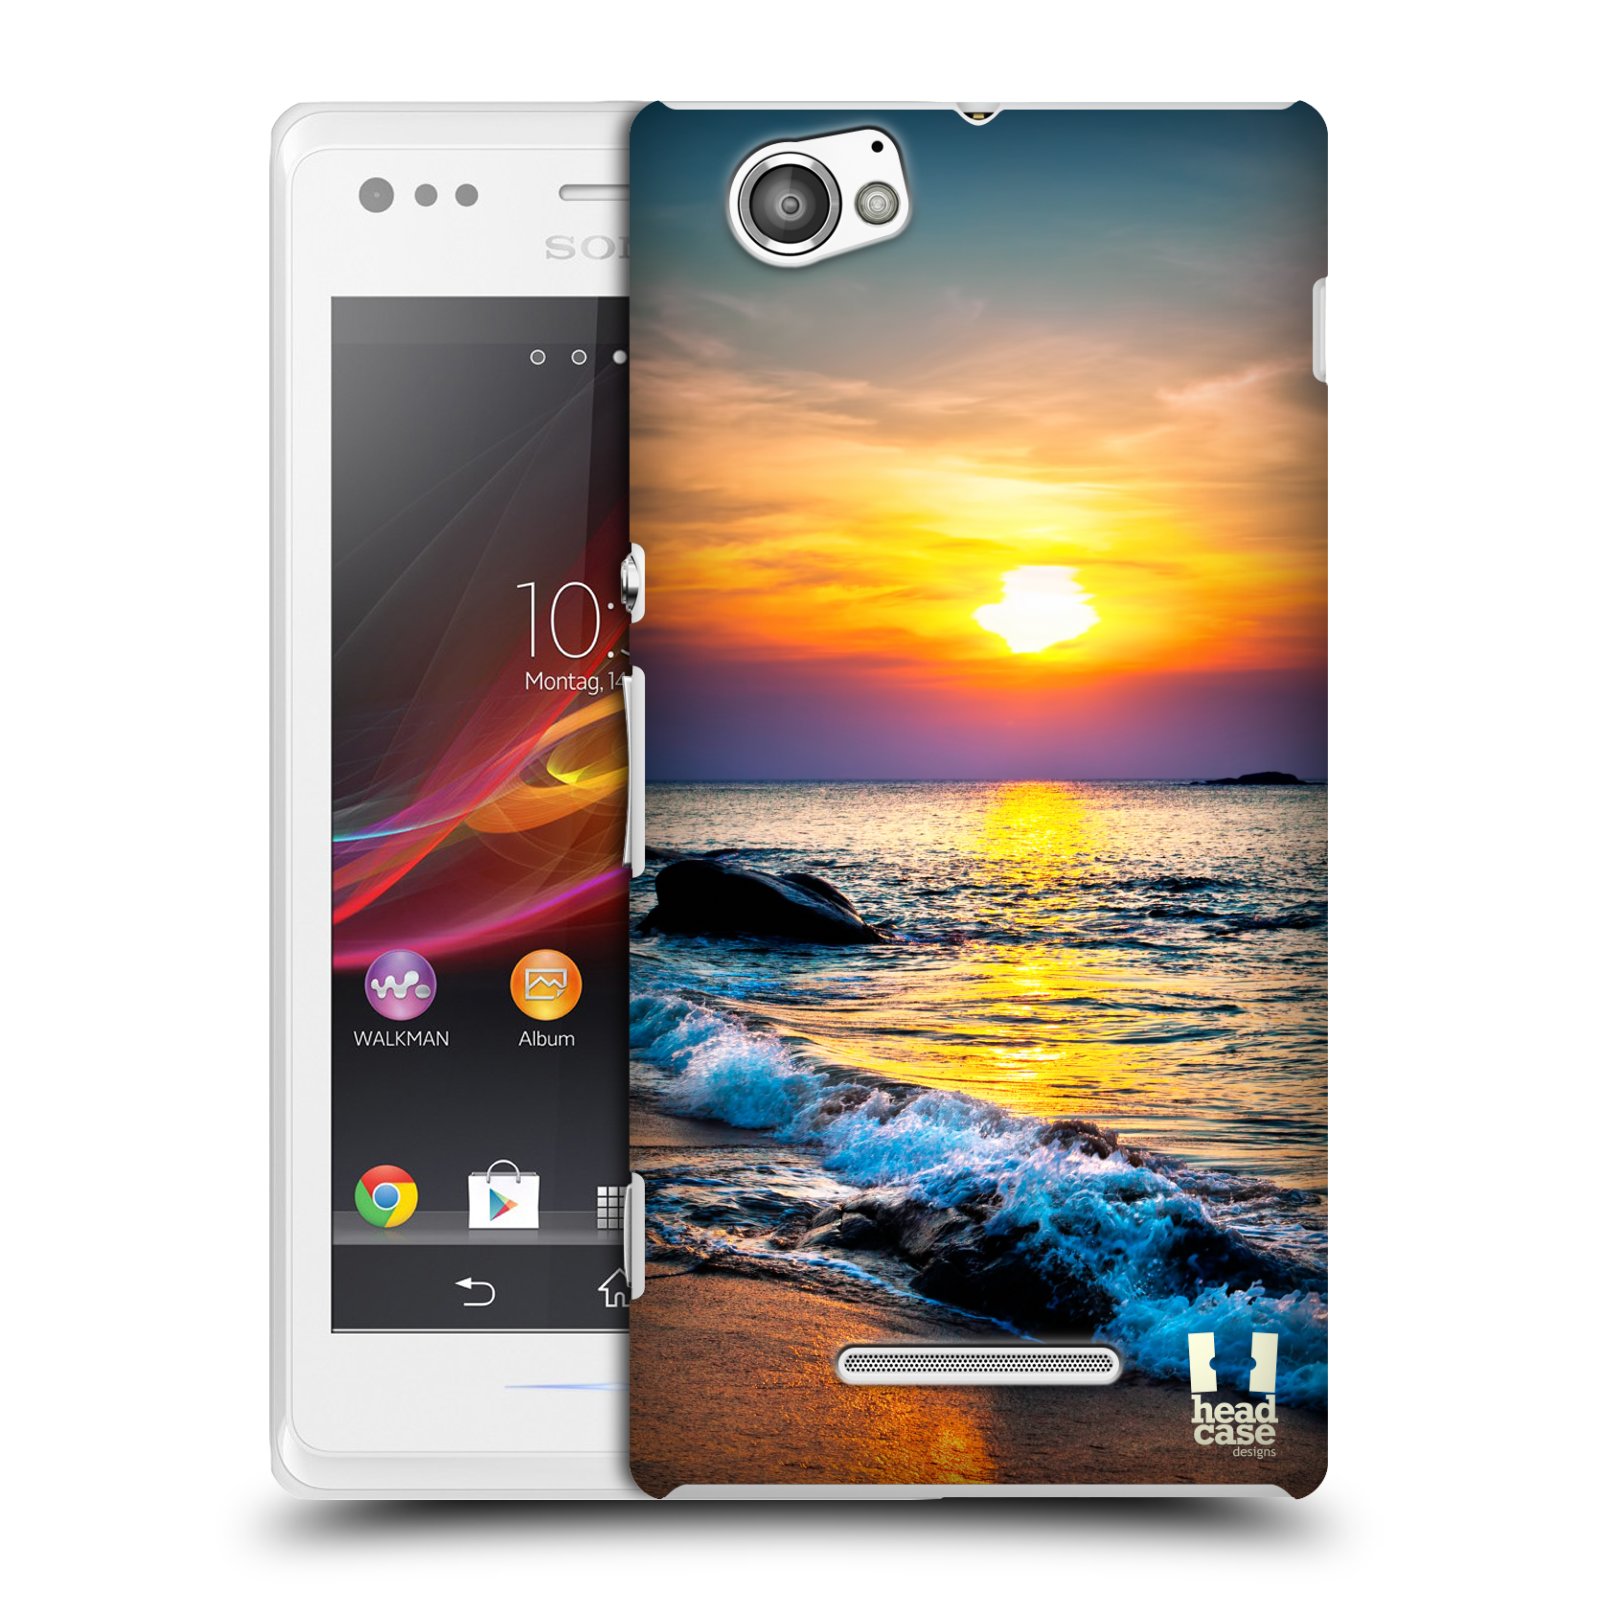 HEAD CASE plastový obal na mobil Sony Xperia M vzor Pláže a Moře barevný západ slunce